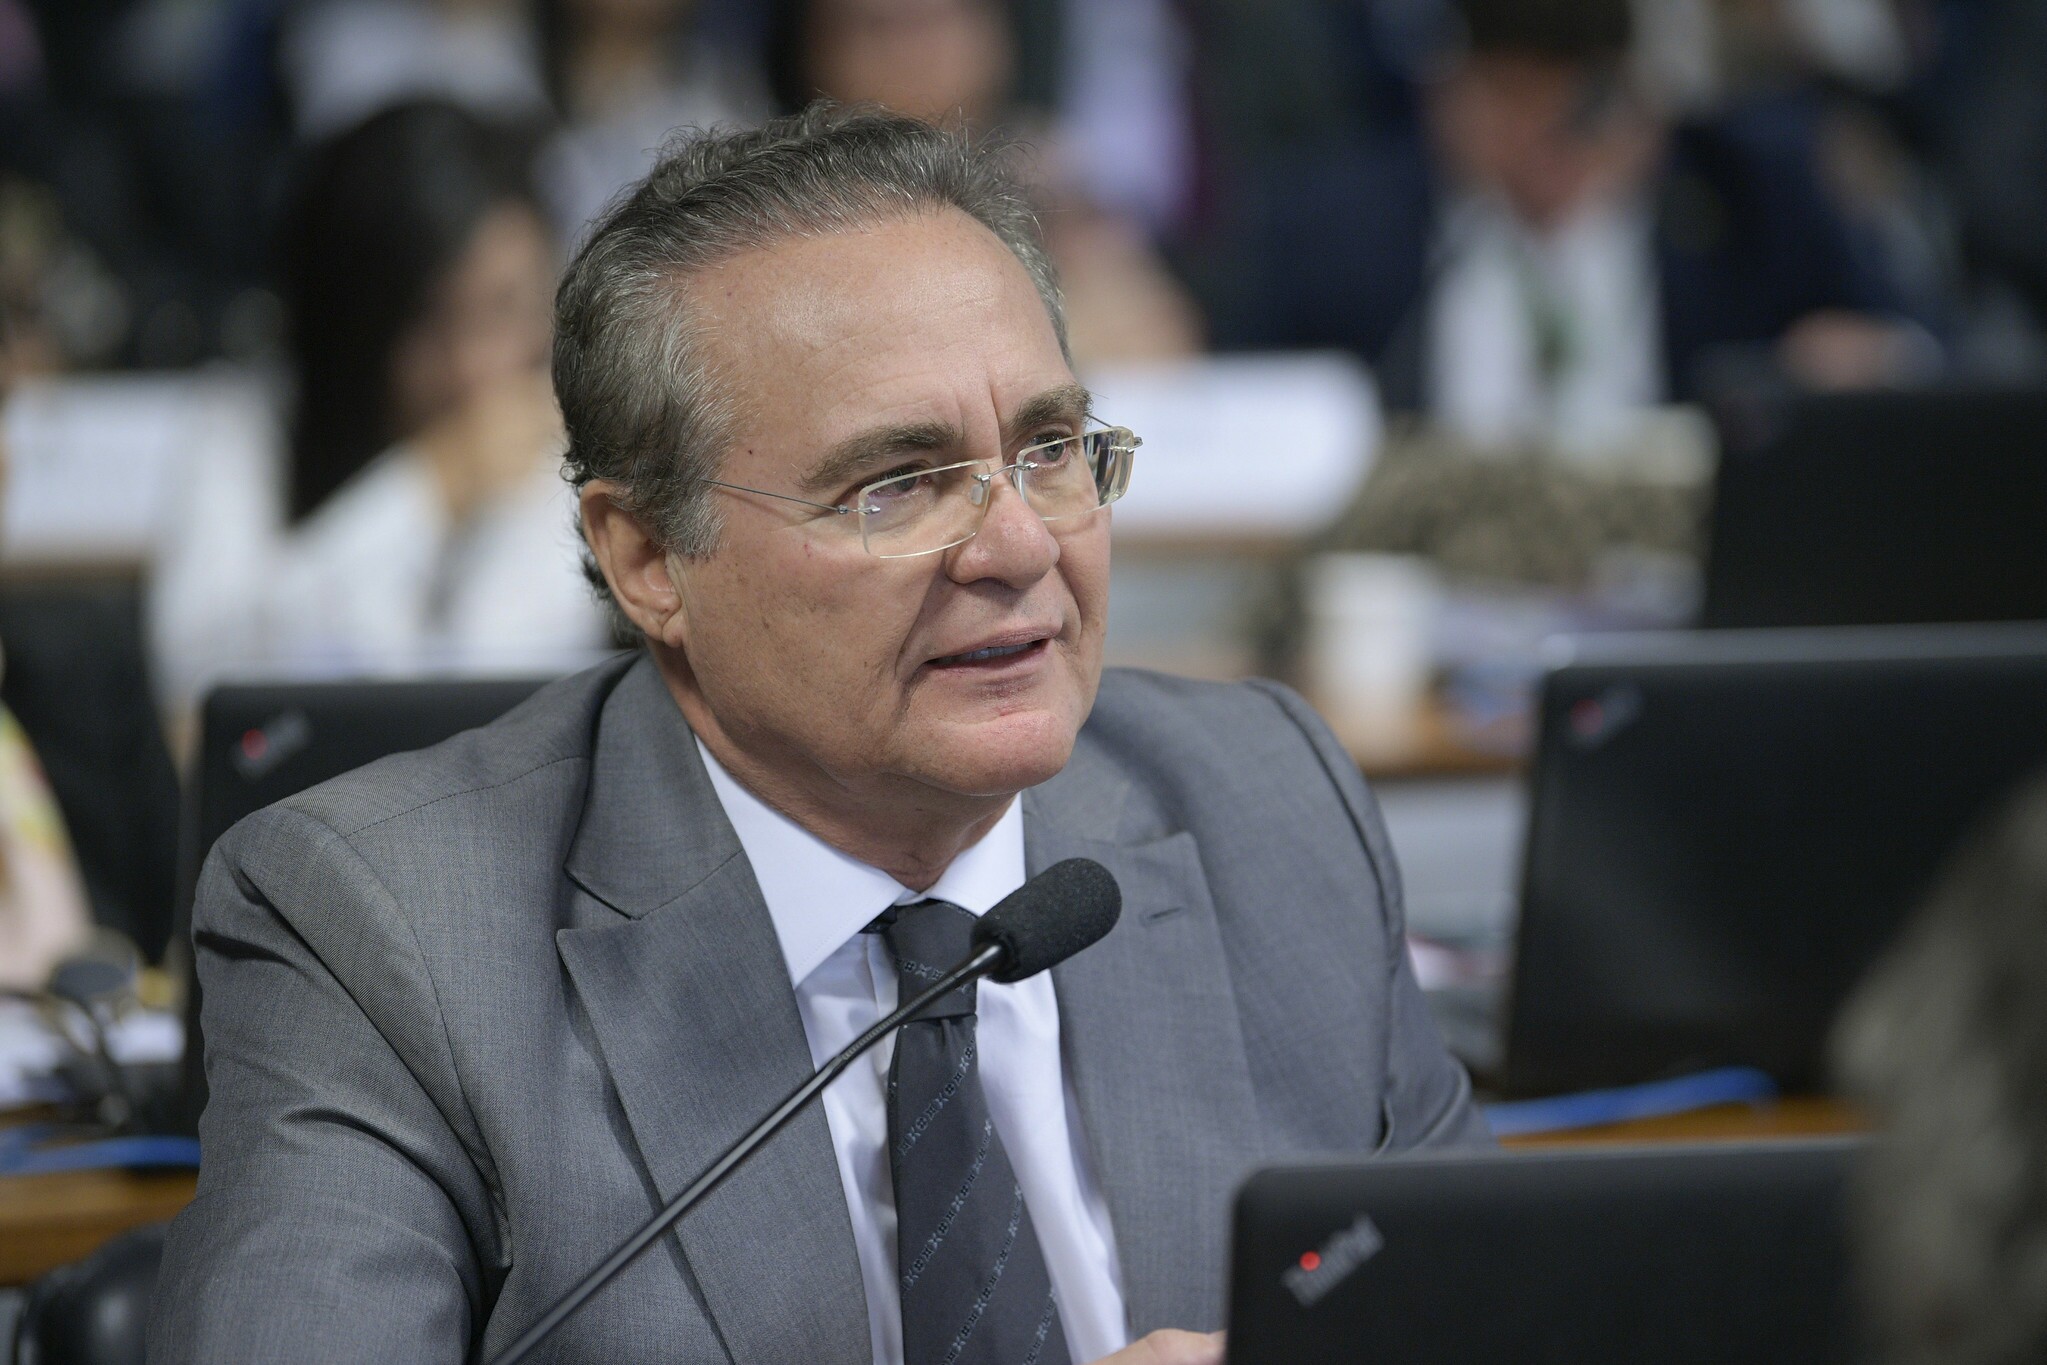 Renan Calheiros (PMDB)